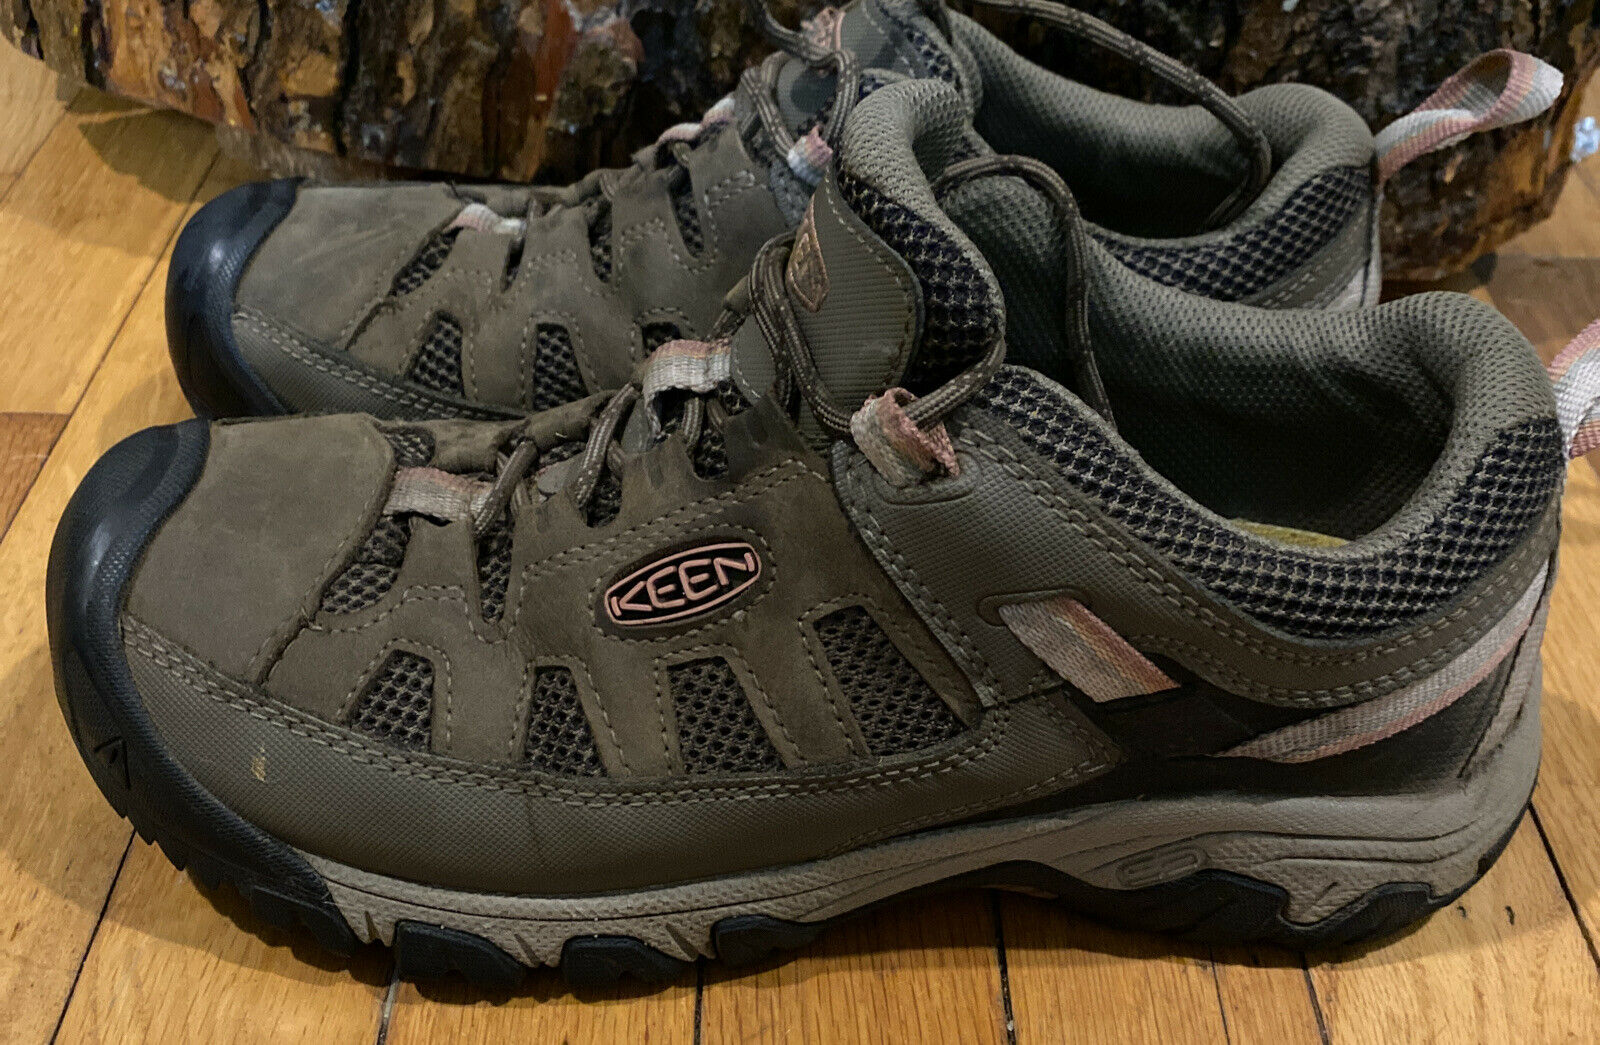 Keen Targhee Waterproof Hiking Boots Womens Size 10 Wide KTH 011020 Euro 40.5